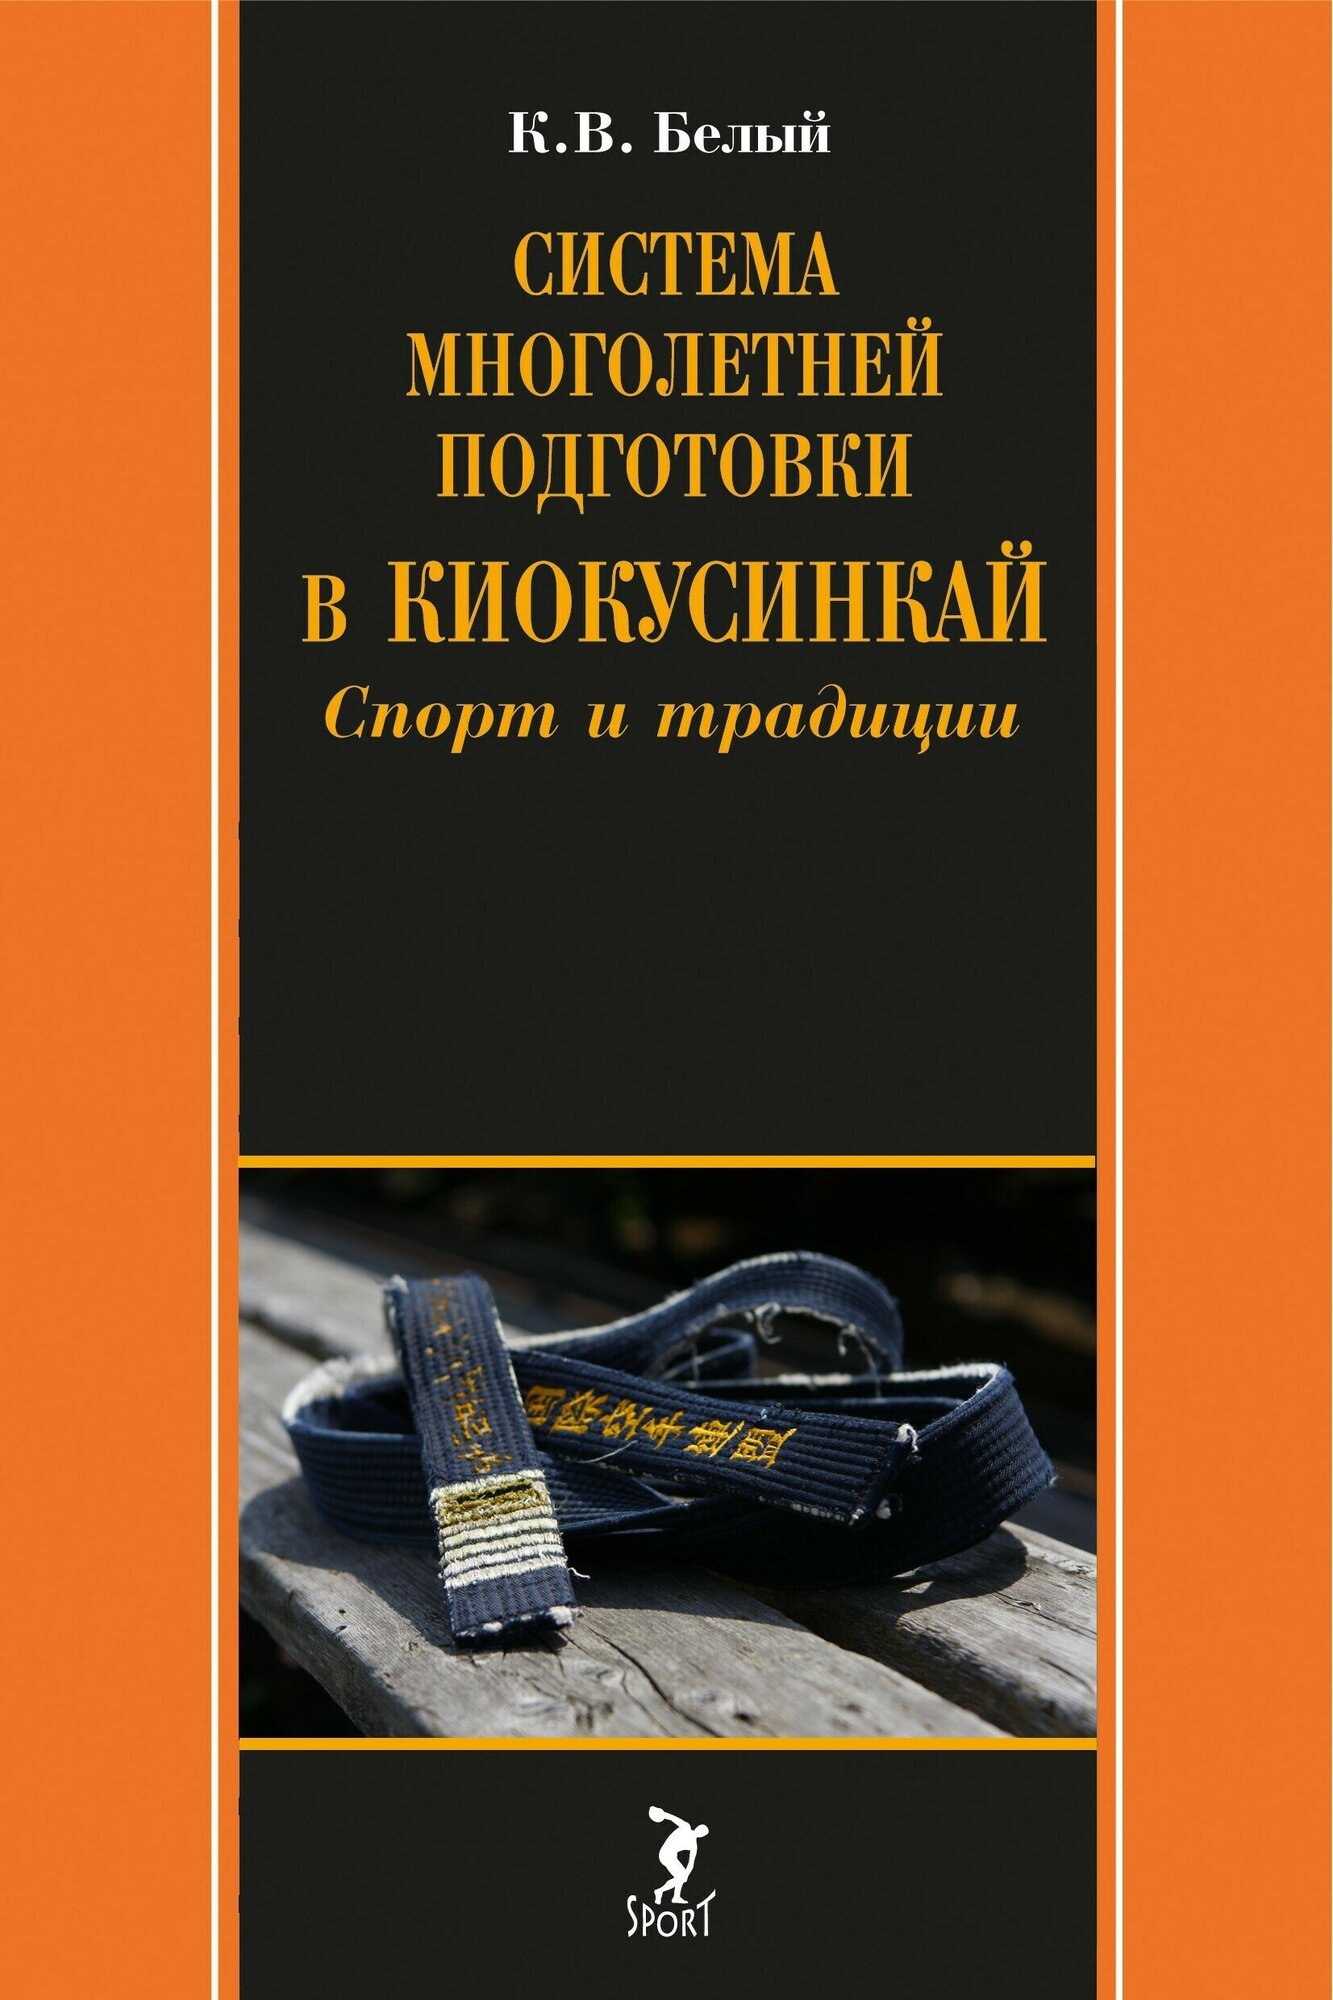 Книга "Система многолетней подготовки в киокусинкай. Спорт и традиции" К. В. Белый